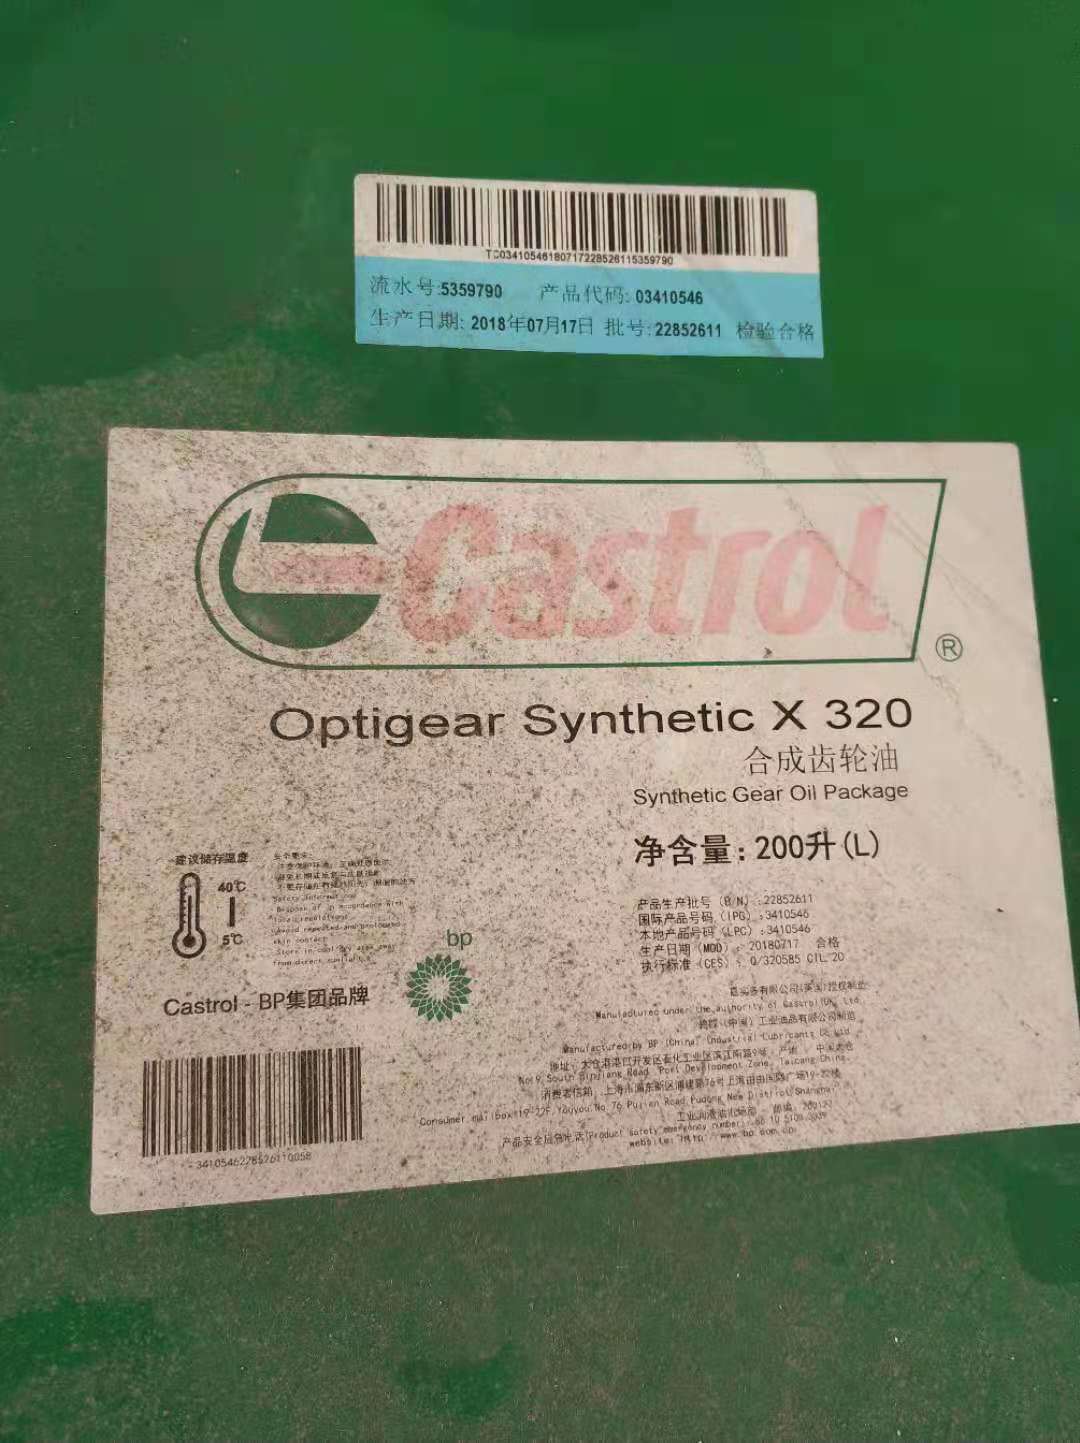 嘉实多合成齿轮油x320，Optigear Synthetic X320